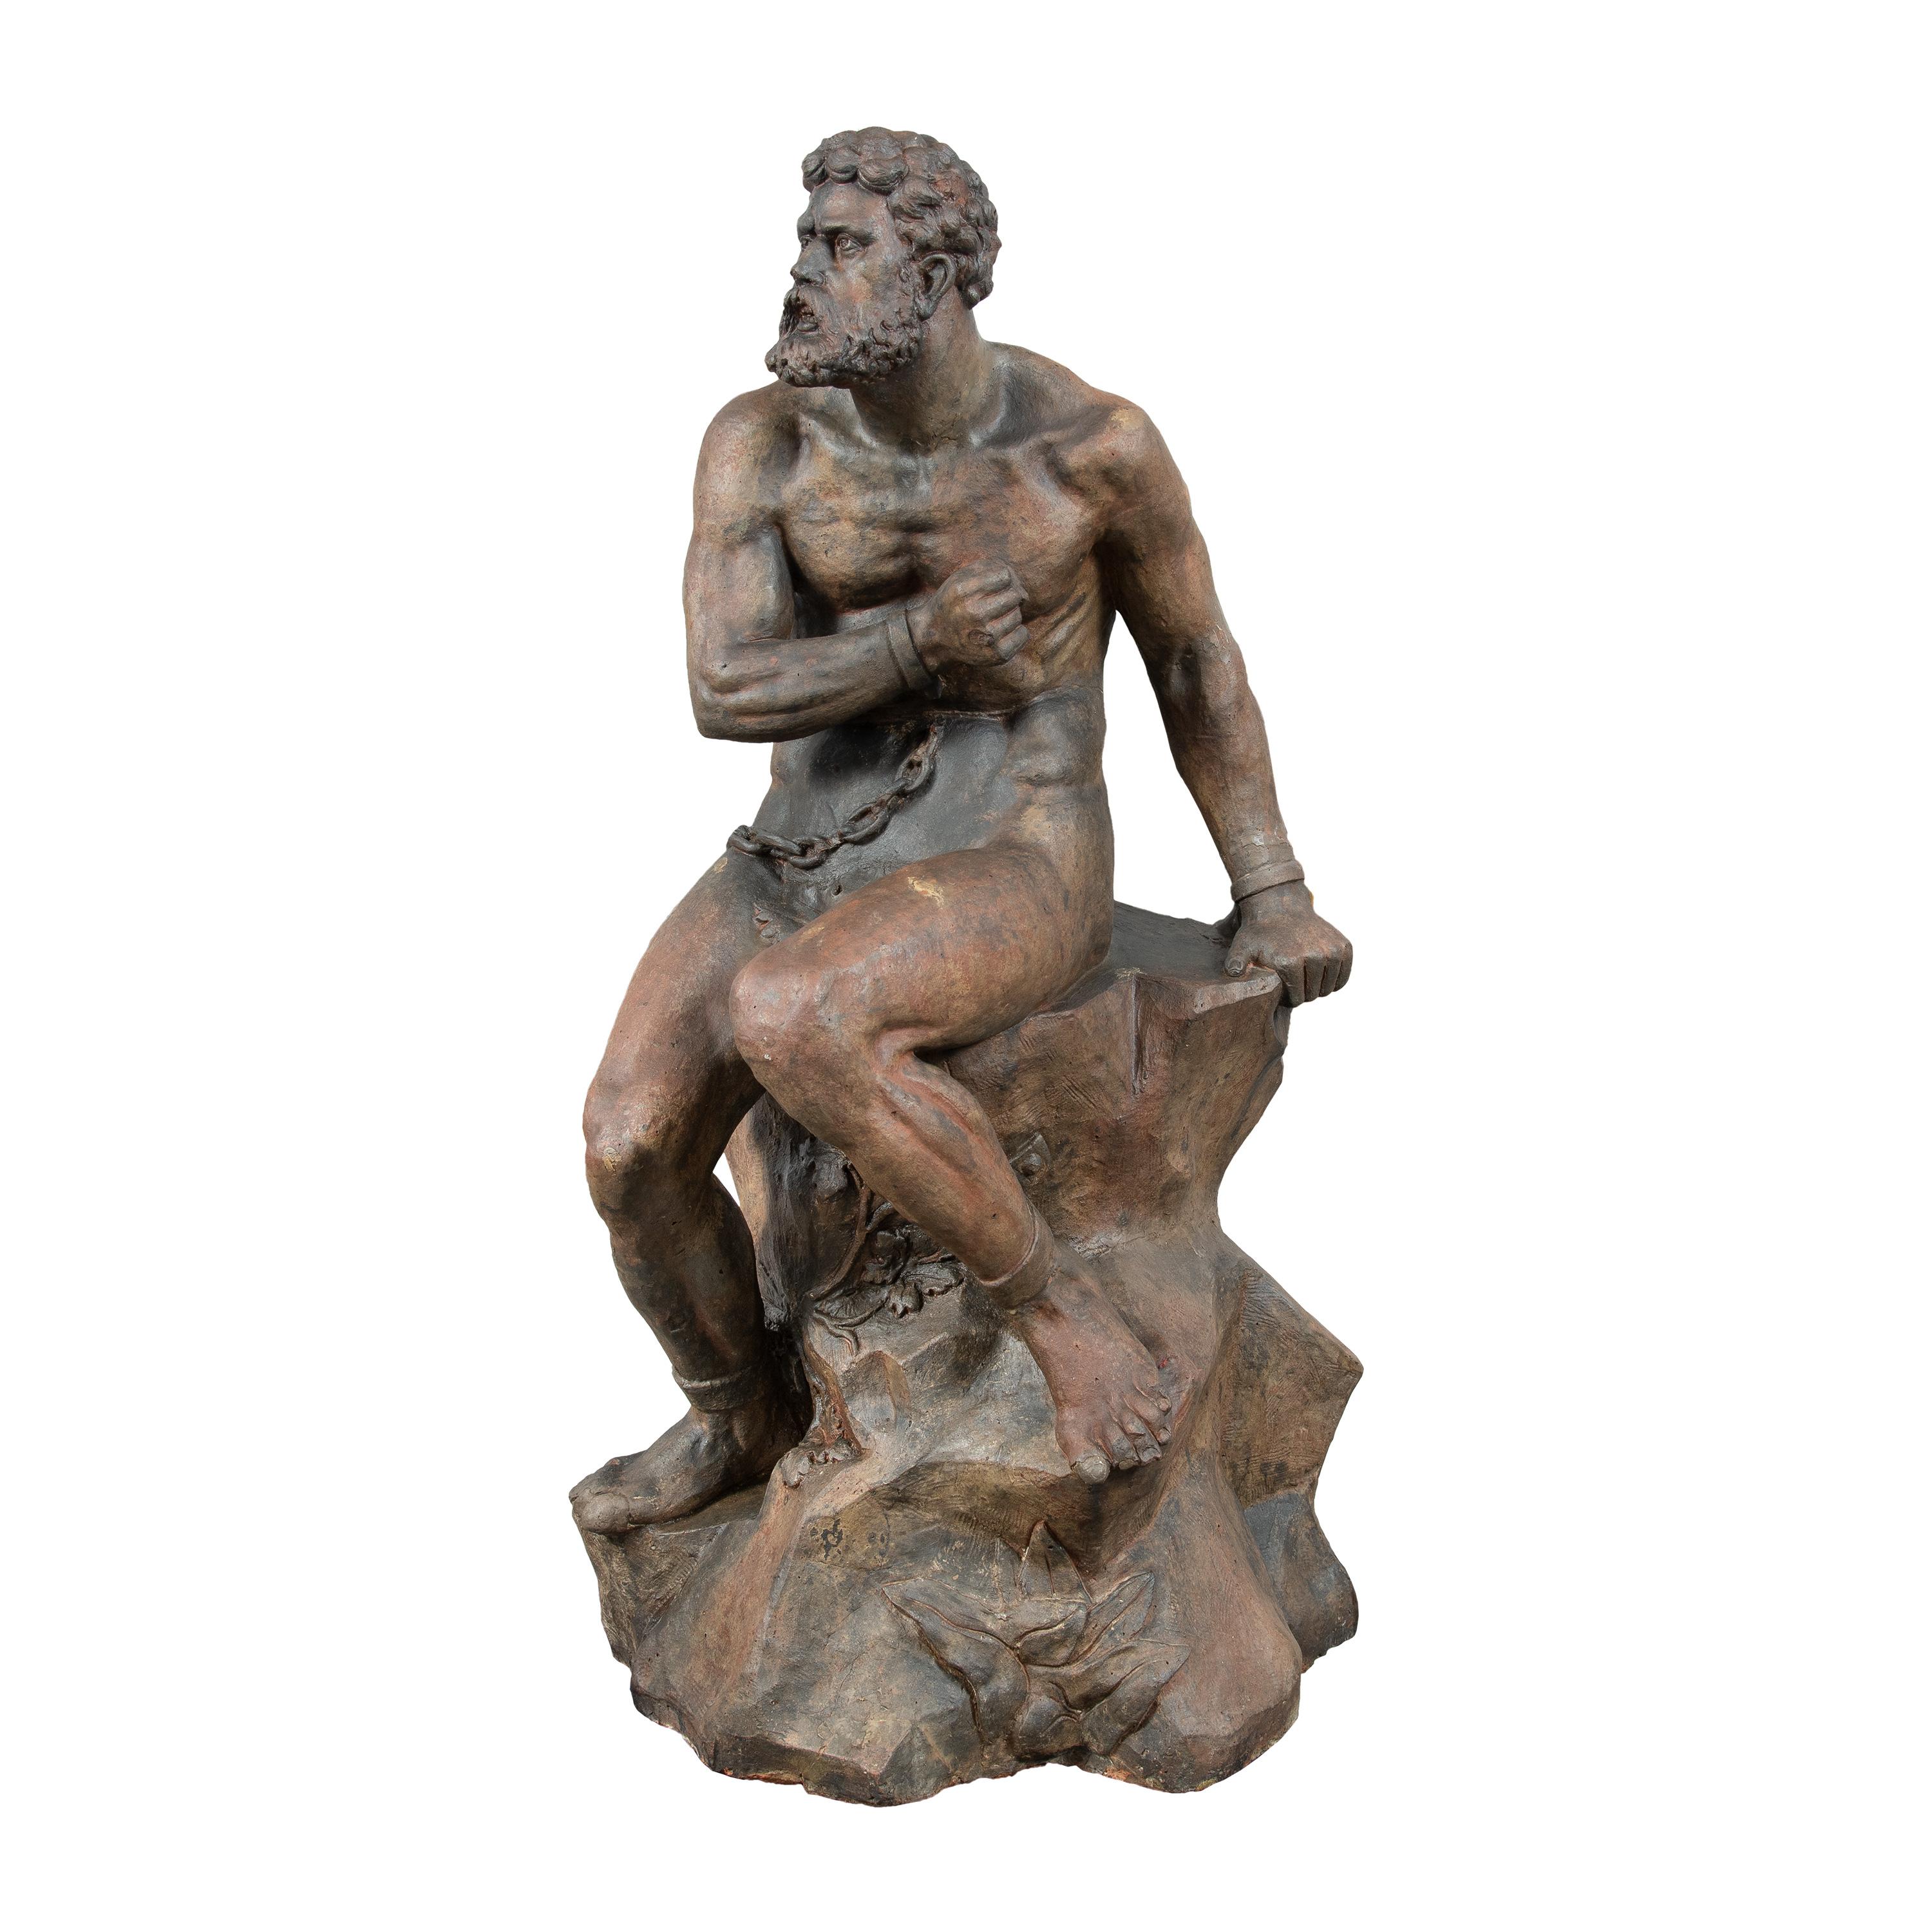 Nude Sculpture Unknown - Maître sculpteur baroque - Sculpture en terre cuite du XVIIIe siècle - Figure de Prométhée